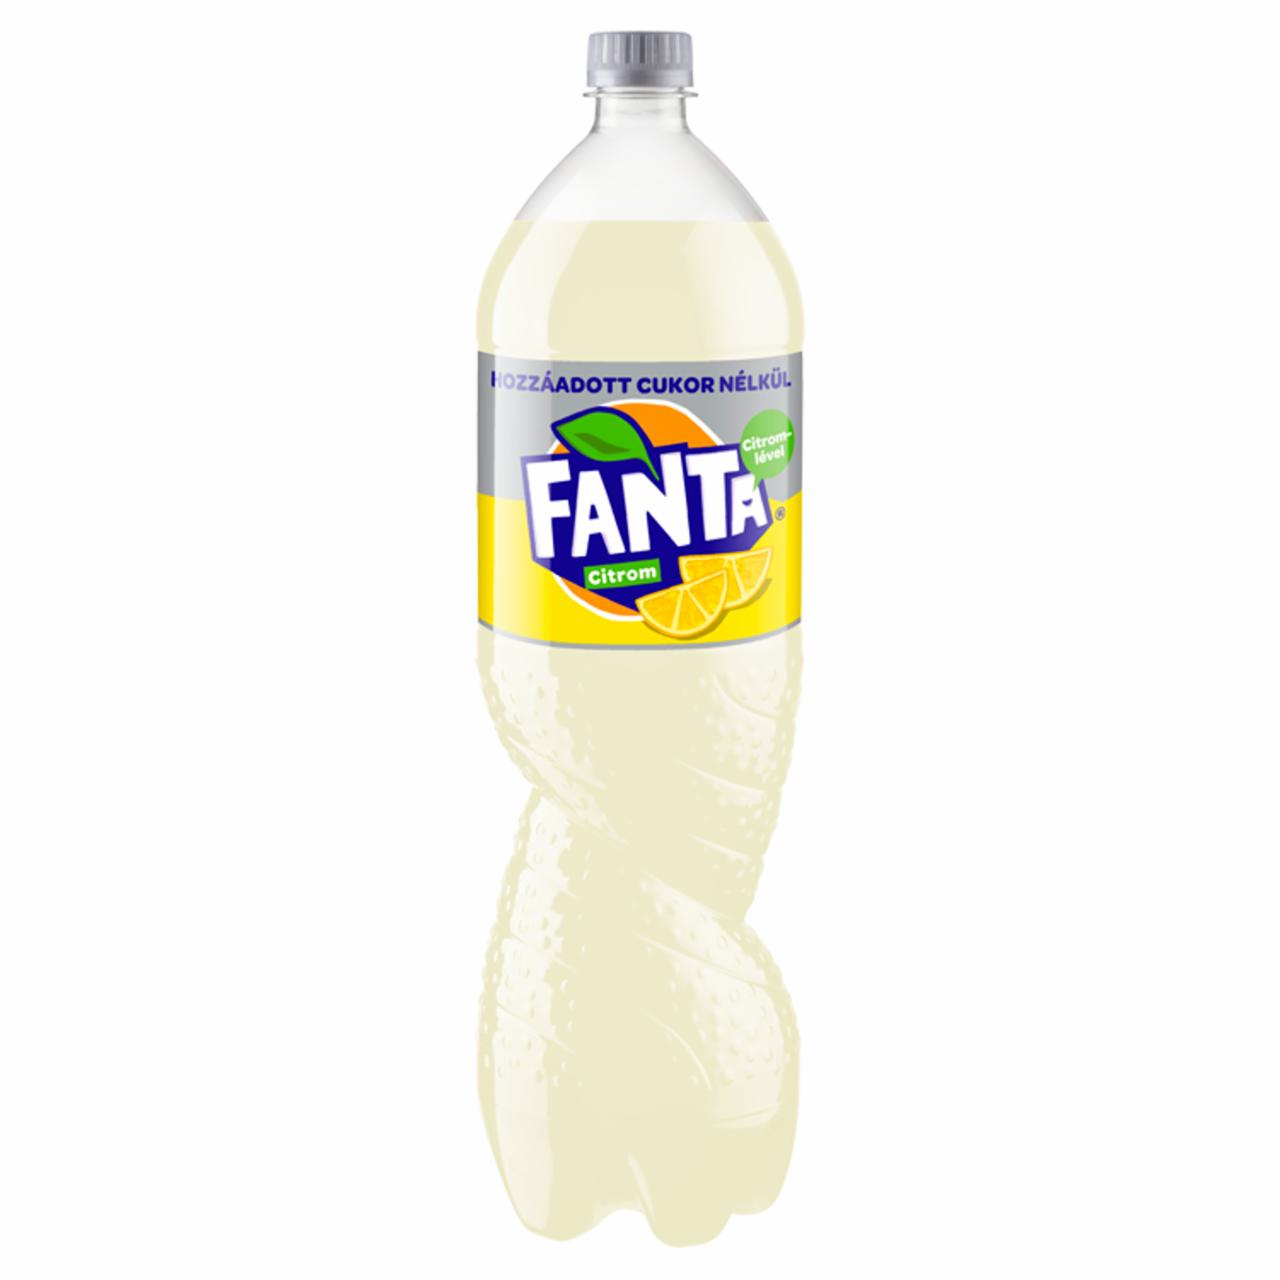 Képek - Fanta Zero citrom ízű szénsavas energiamentes üdítőital édesítőszerekkel 1,75 l